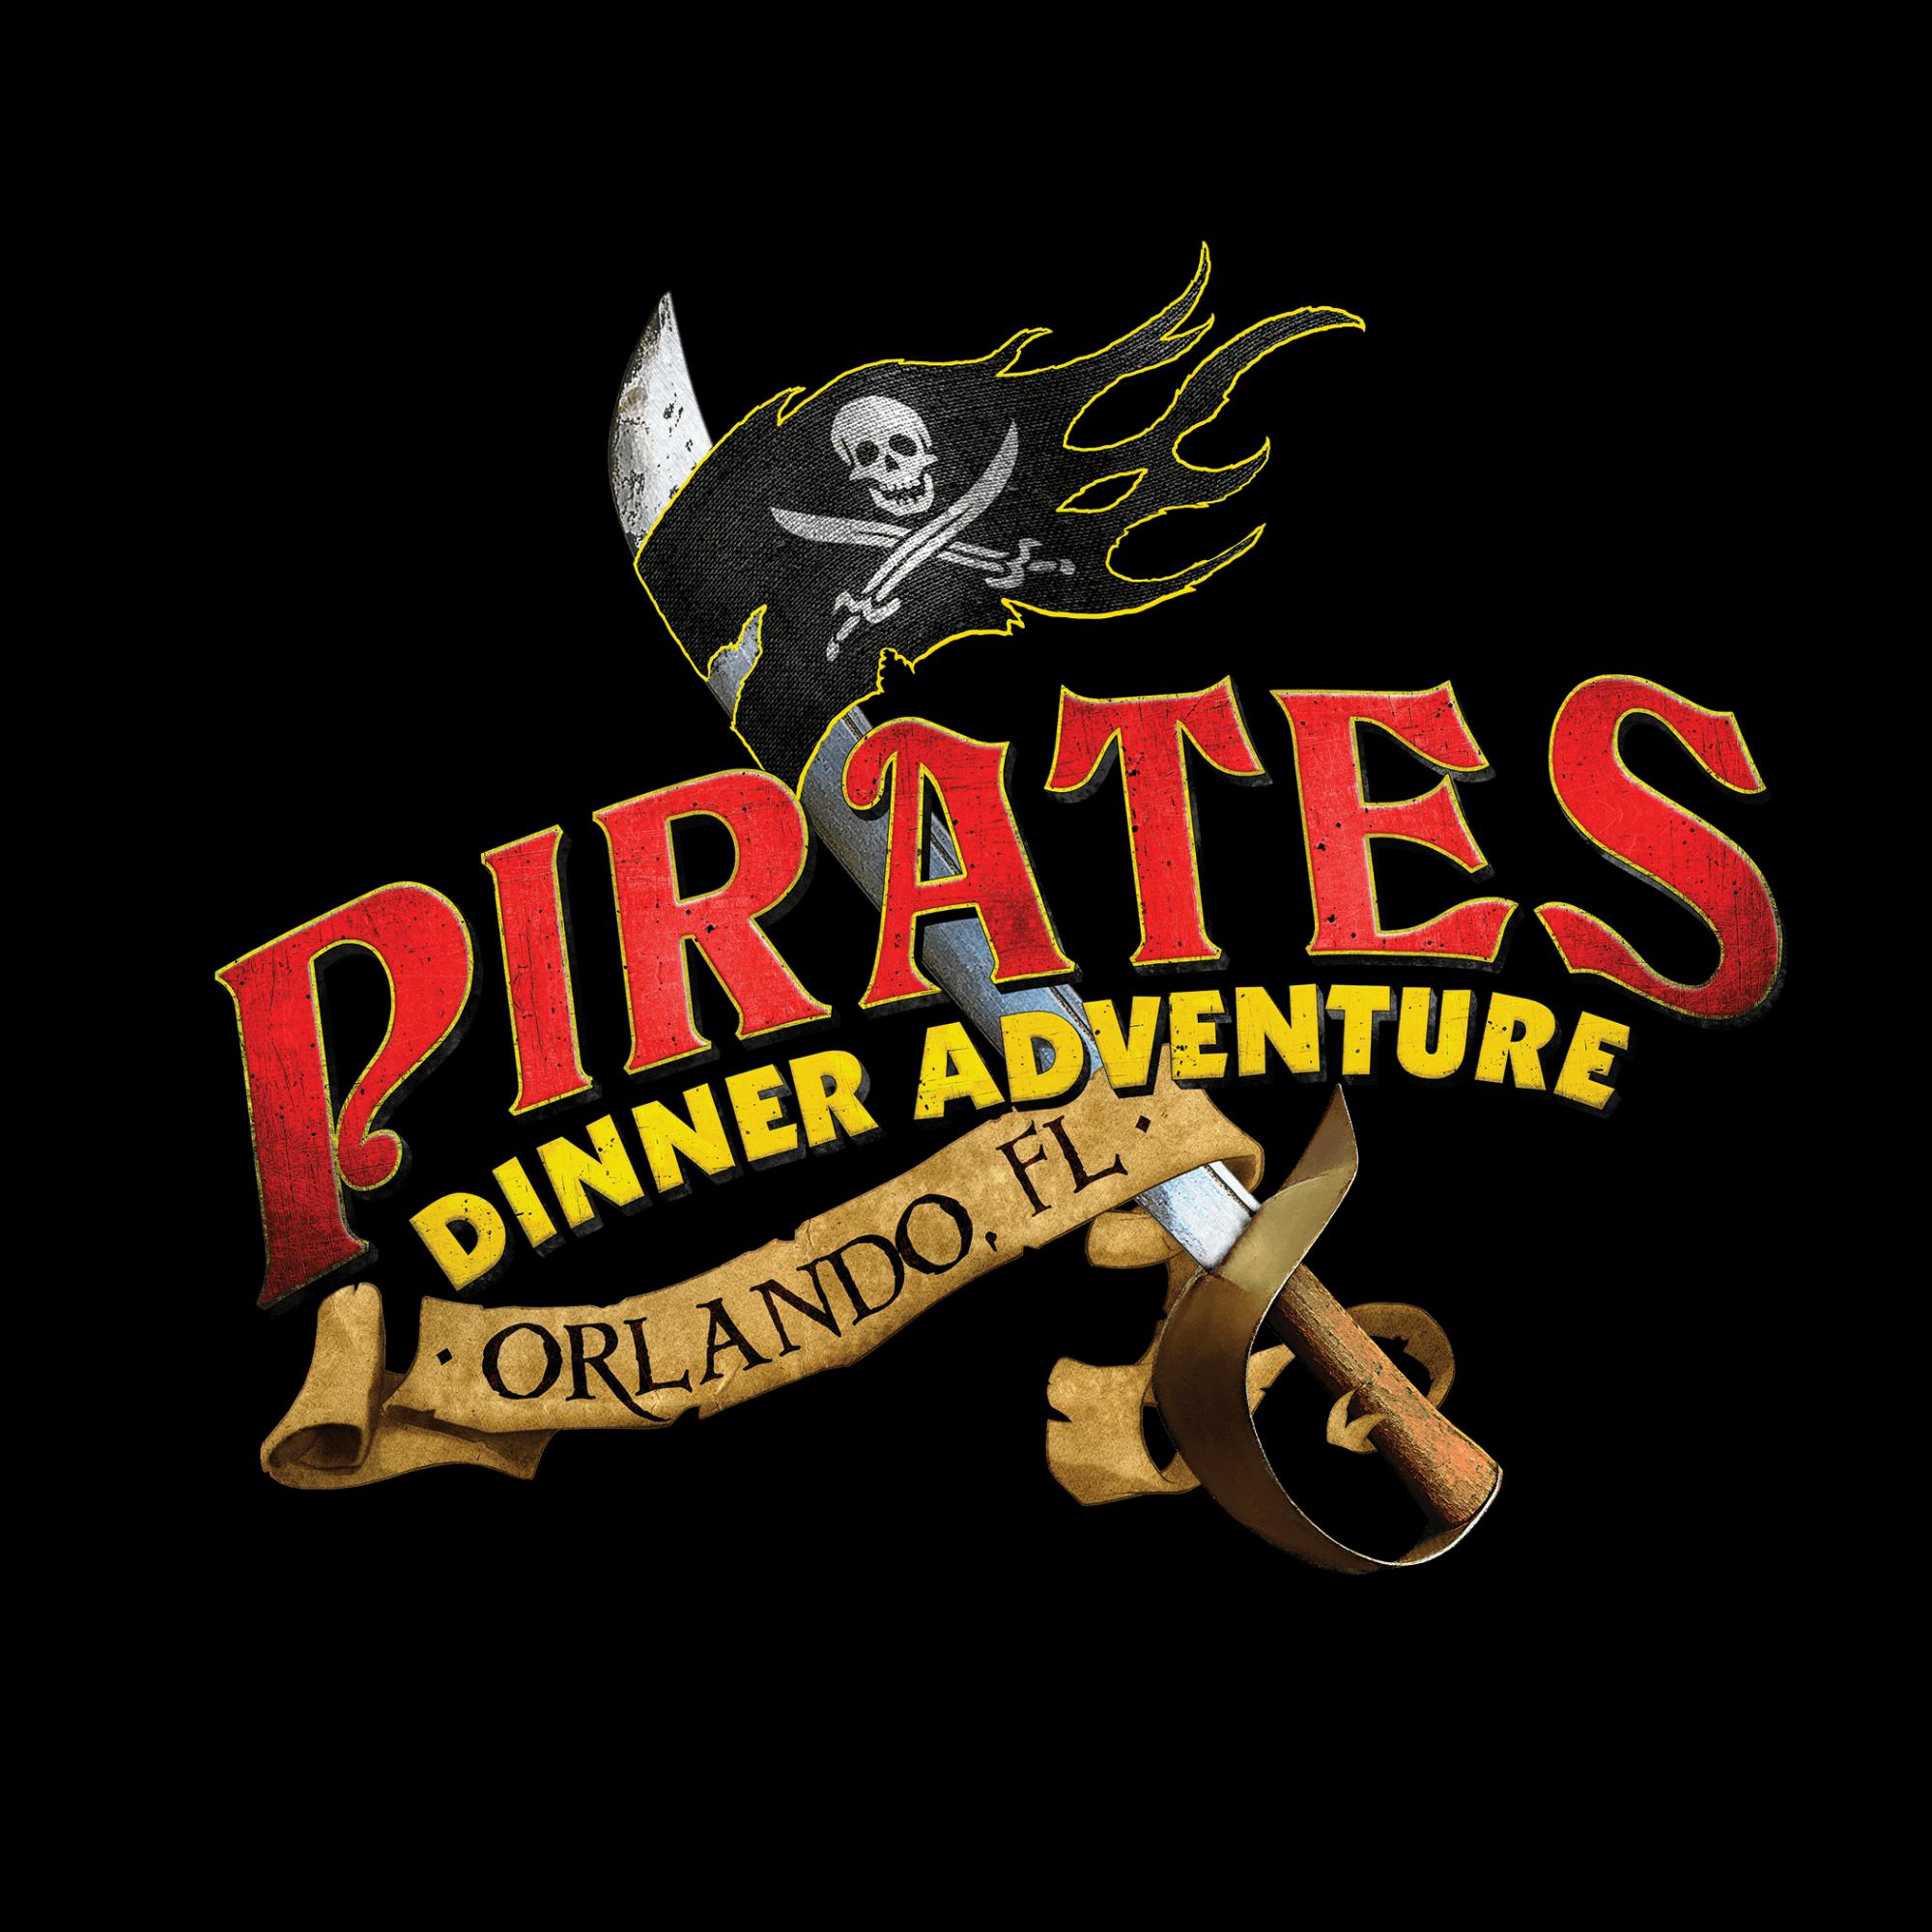 Entradas al nivel del tesoro para Pirates Dinner Adventure en Orlando